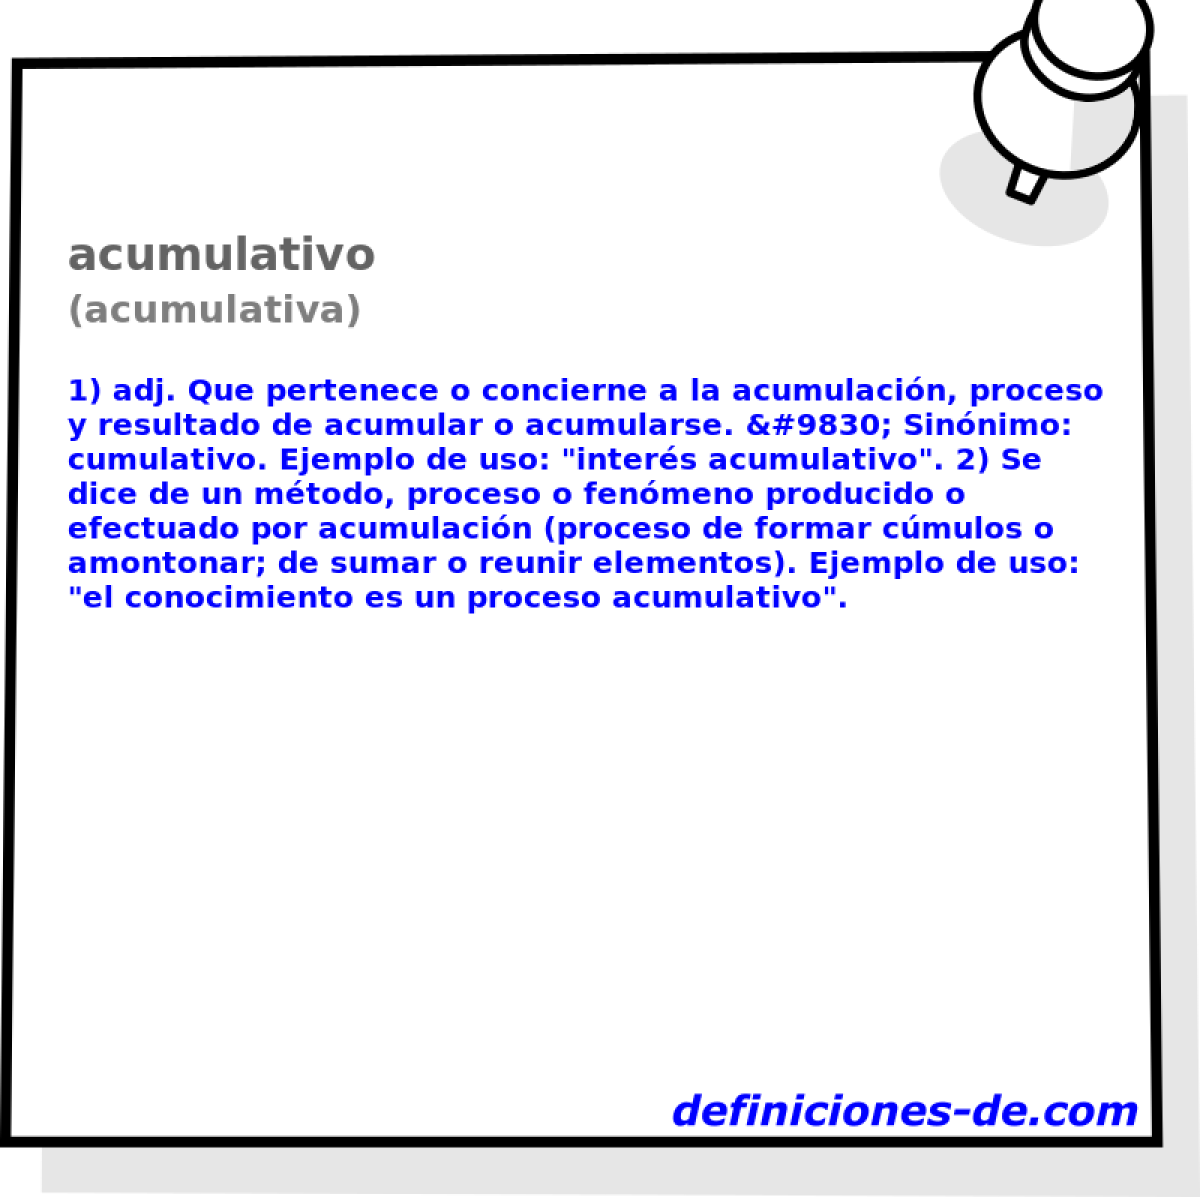 acumulativo (acumulativa)